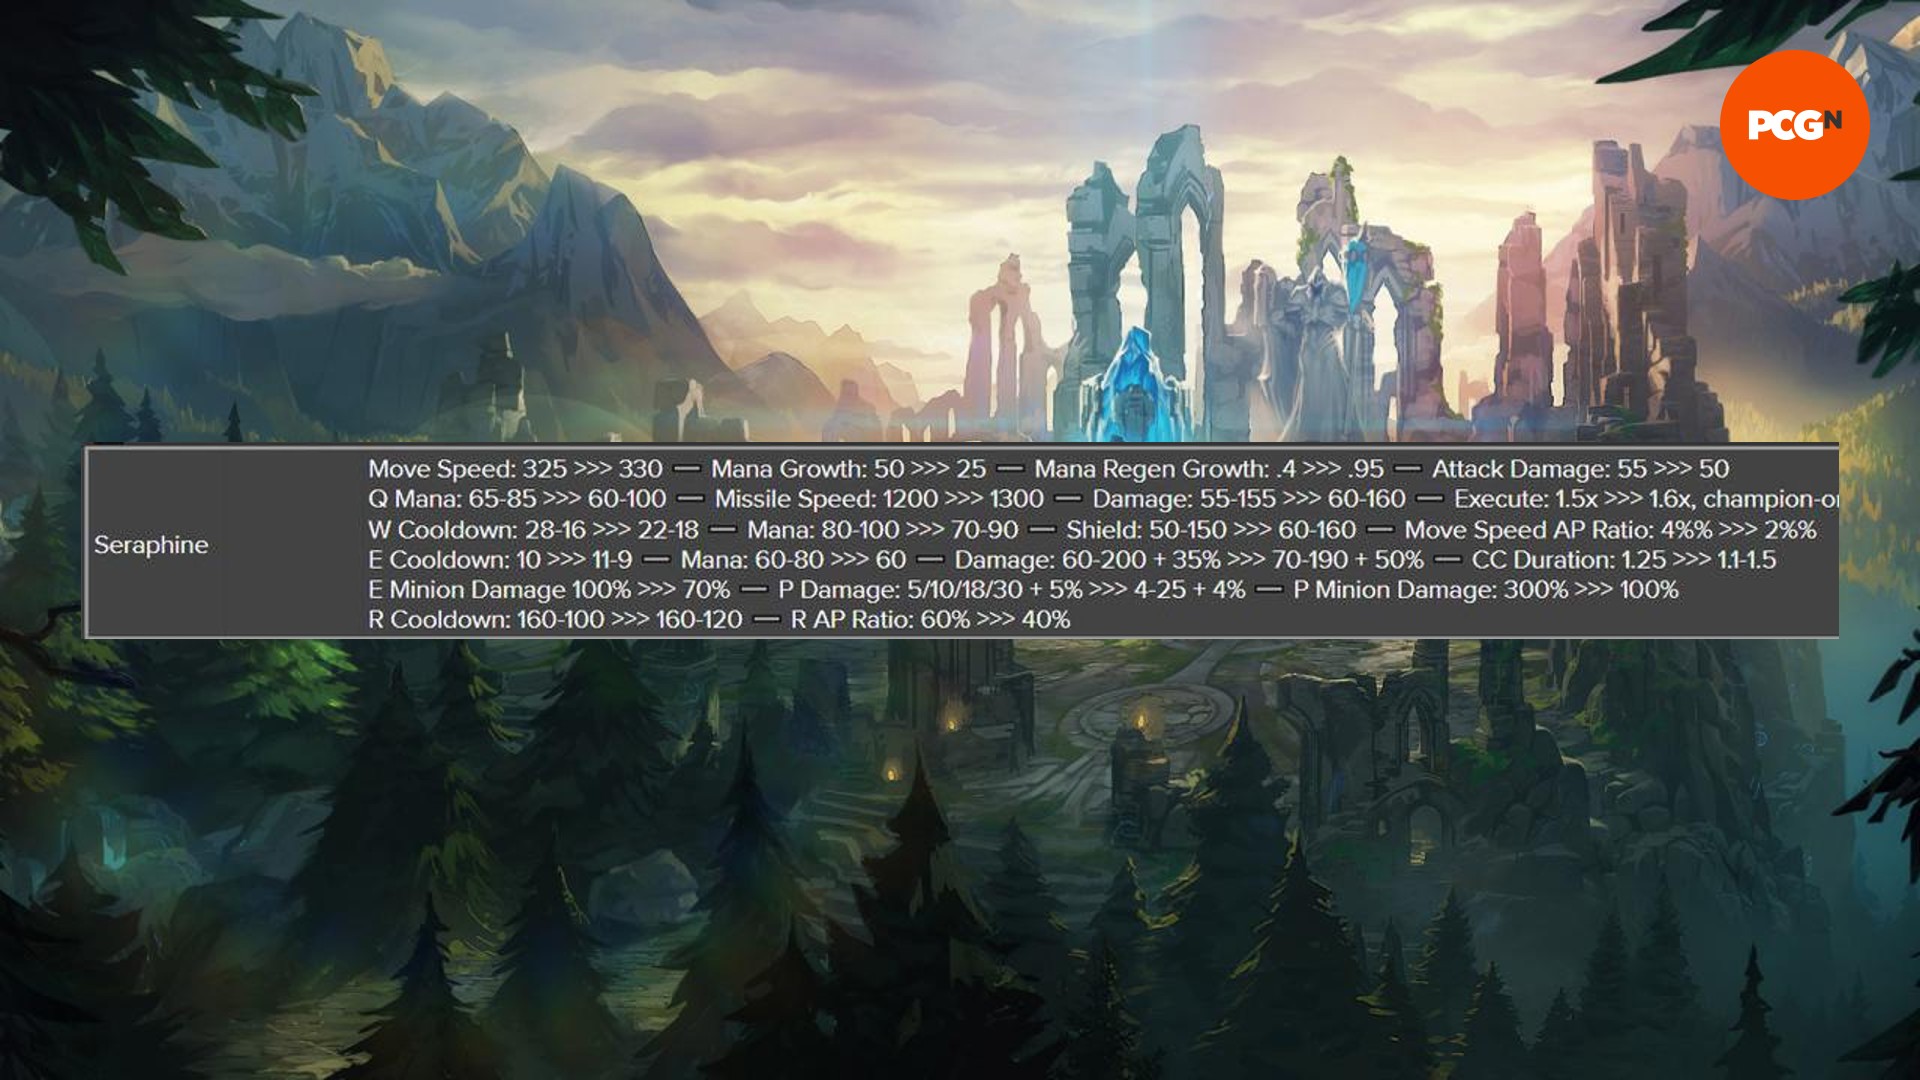 Ein Bild der Notizen zum kommenden League of Legends-Patch 14.5, das die vorgeschlagenen Änderungen für Seraphine zeigt